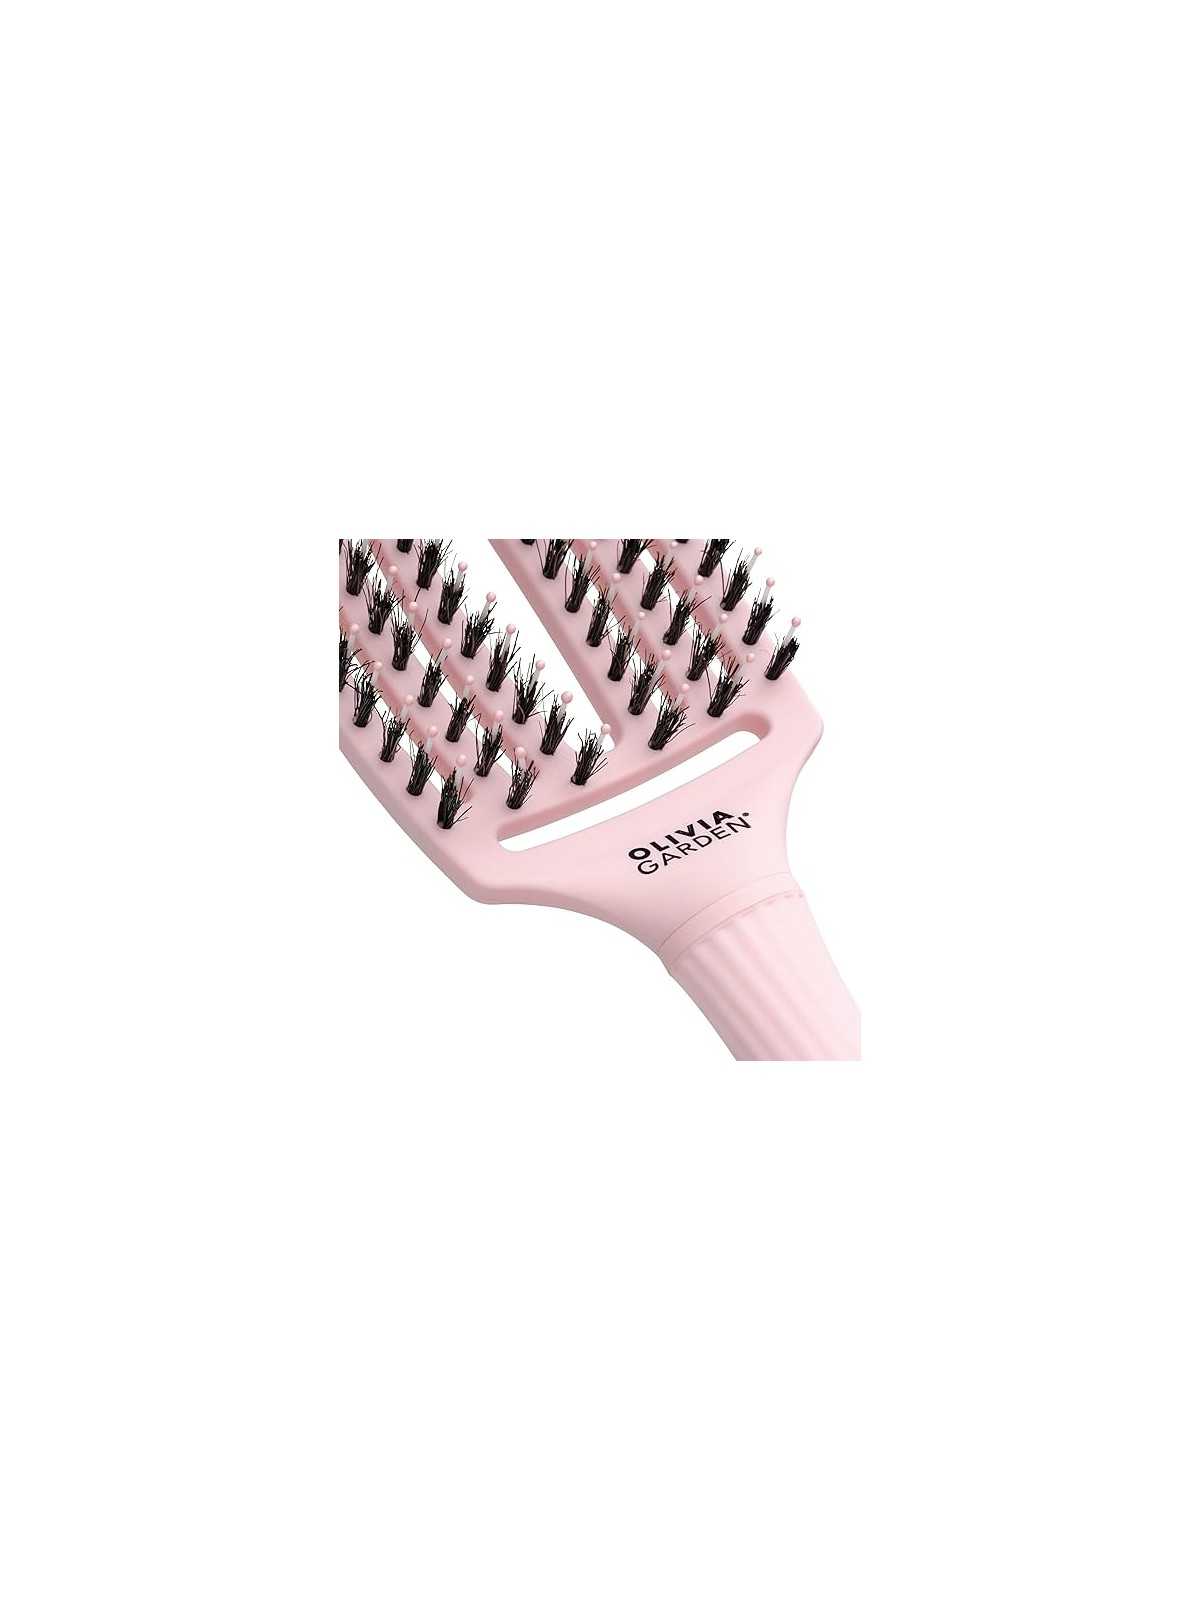 Liquidación en nuestro Outlet de Olivia Garden Cepillo Fingerbrush Pastel Pink por tan solo21,50 € y a un precio específico de 15,05 € en Thalie Care